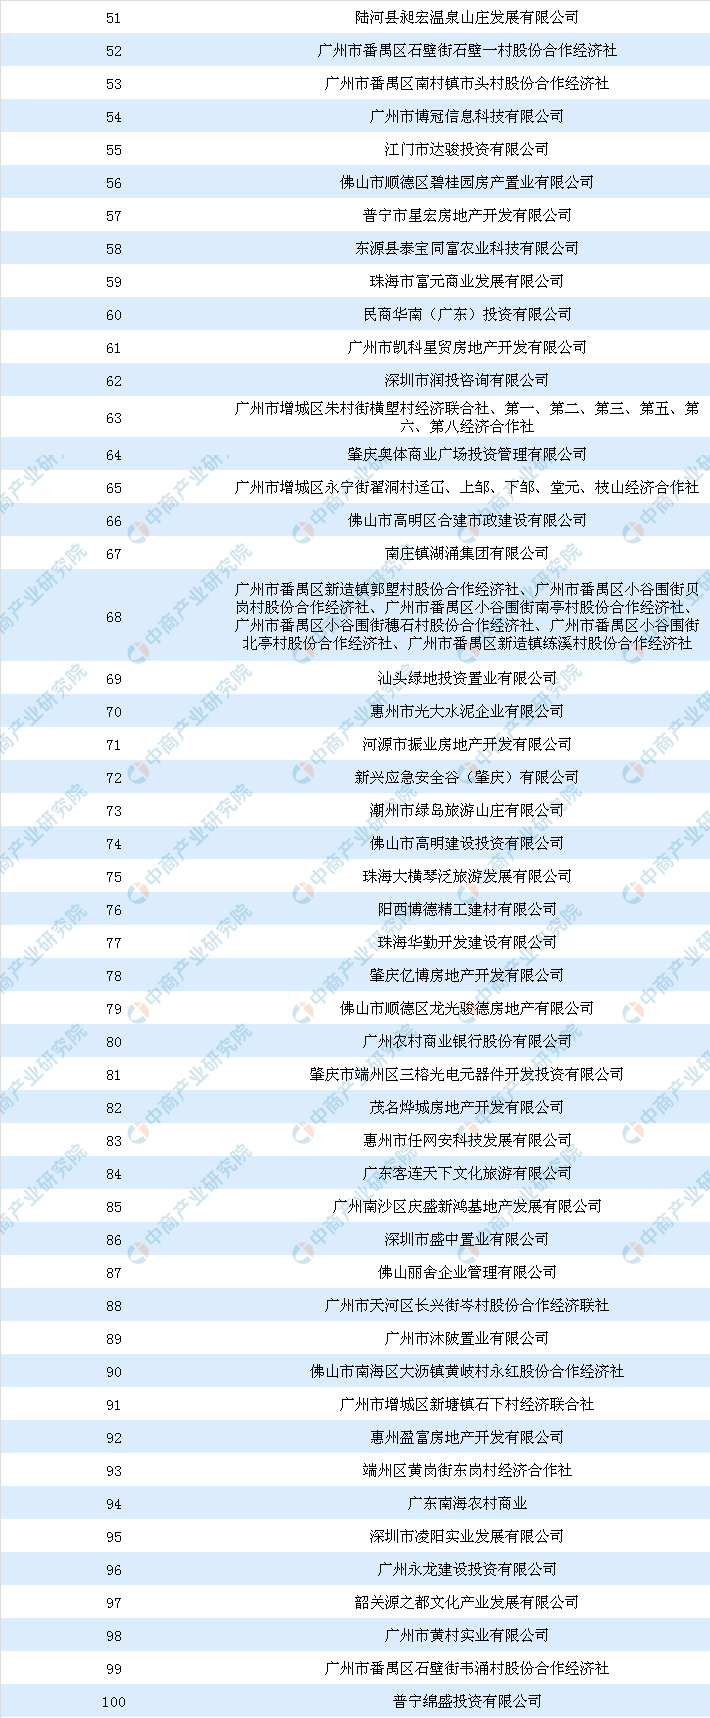 商业地产情报:2018年广东省商业用地拿地面积